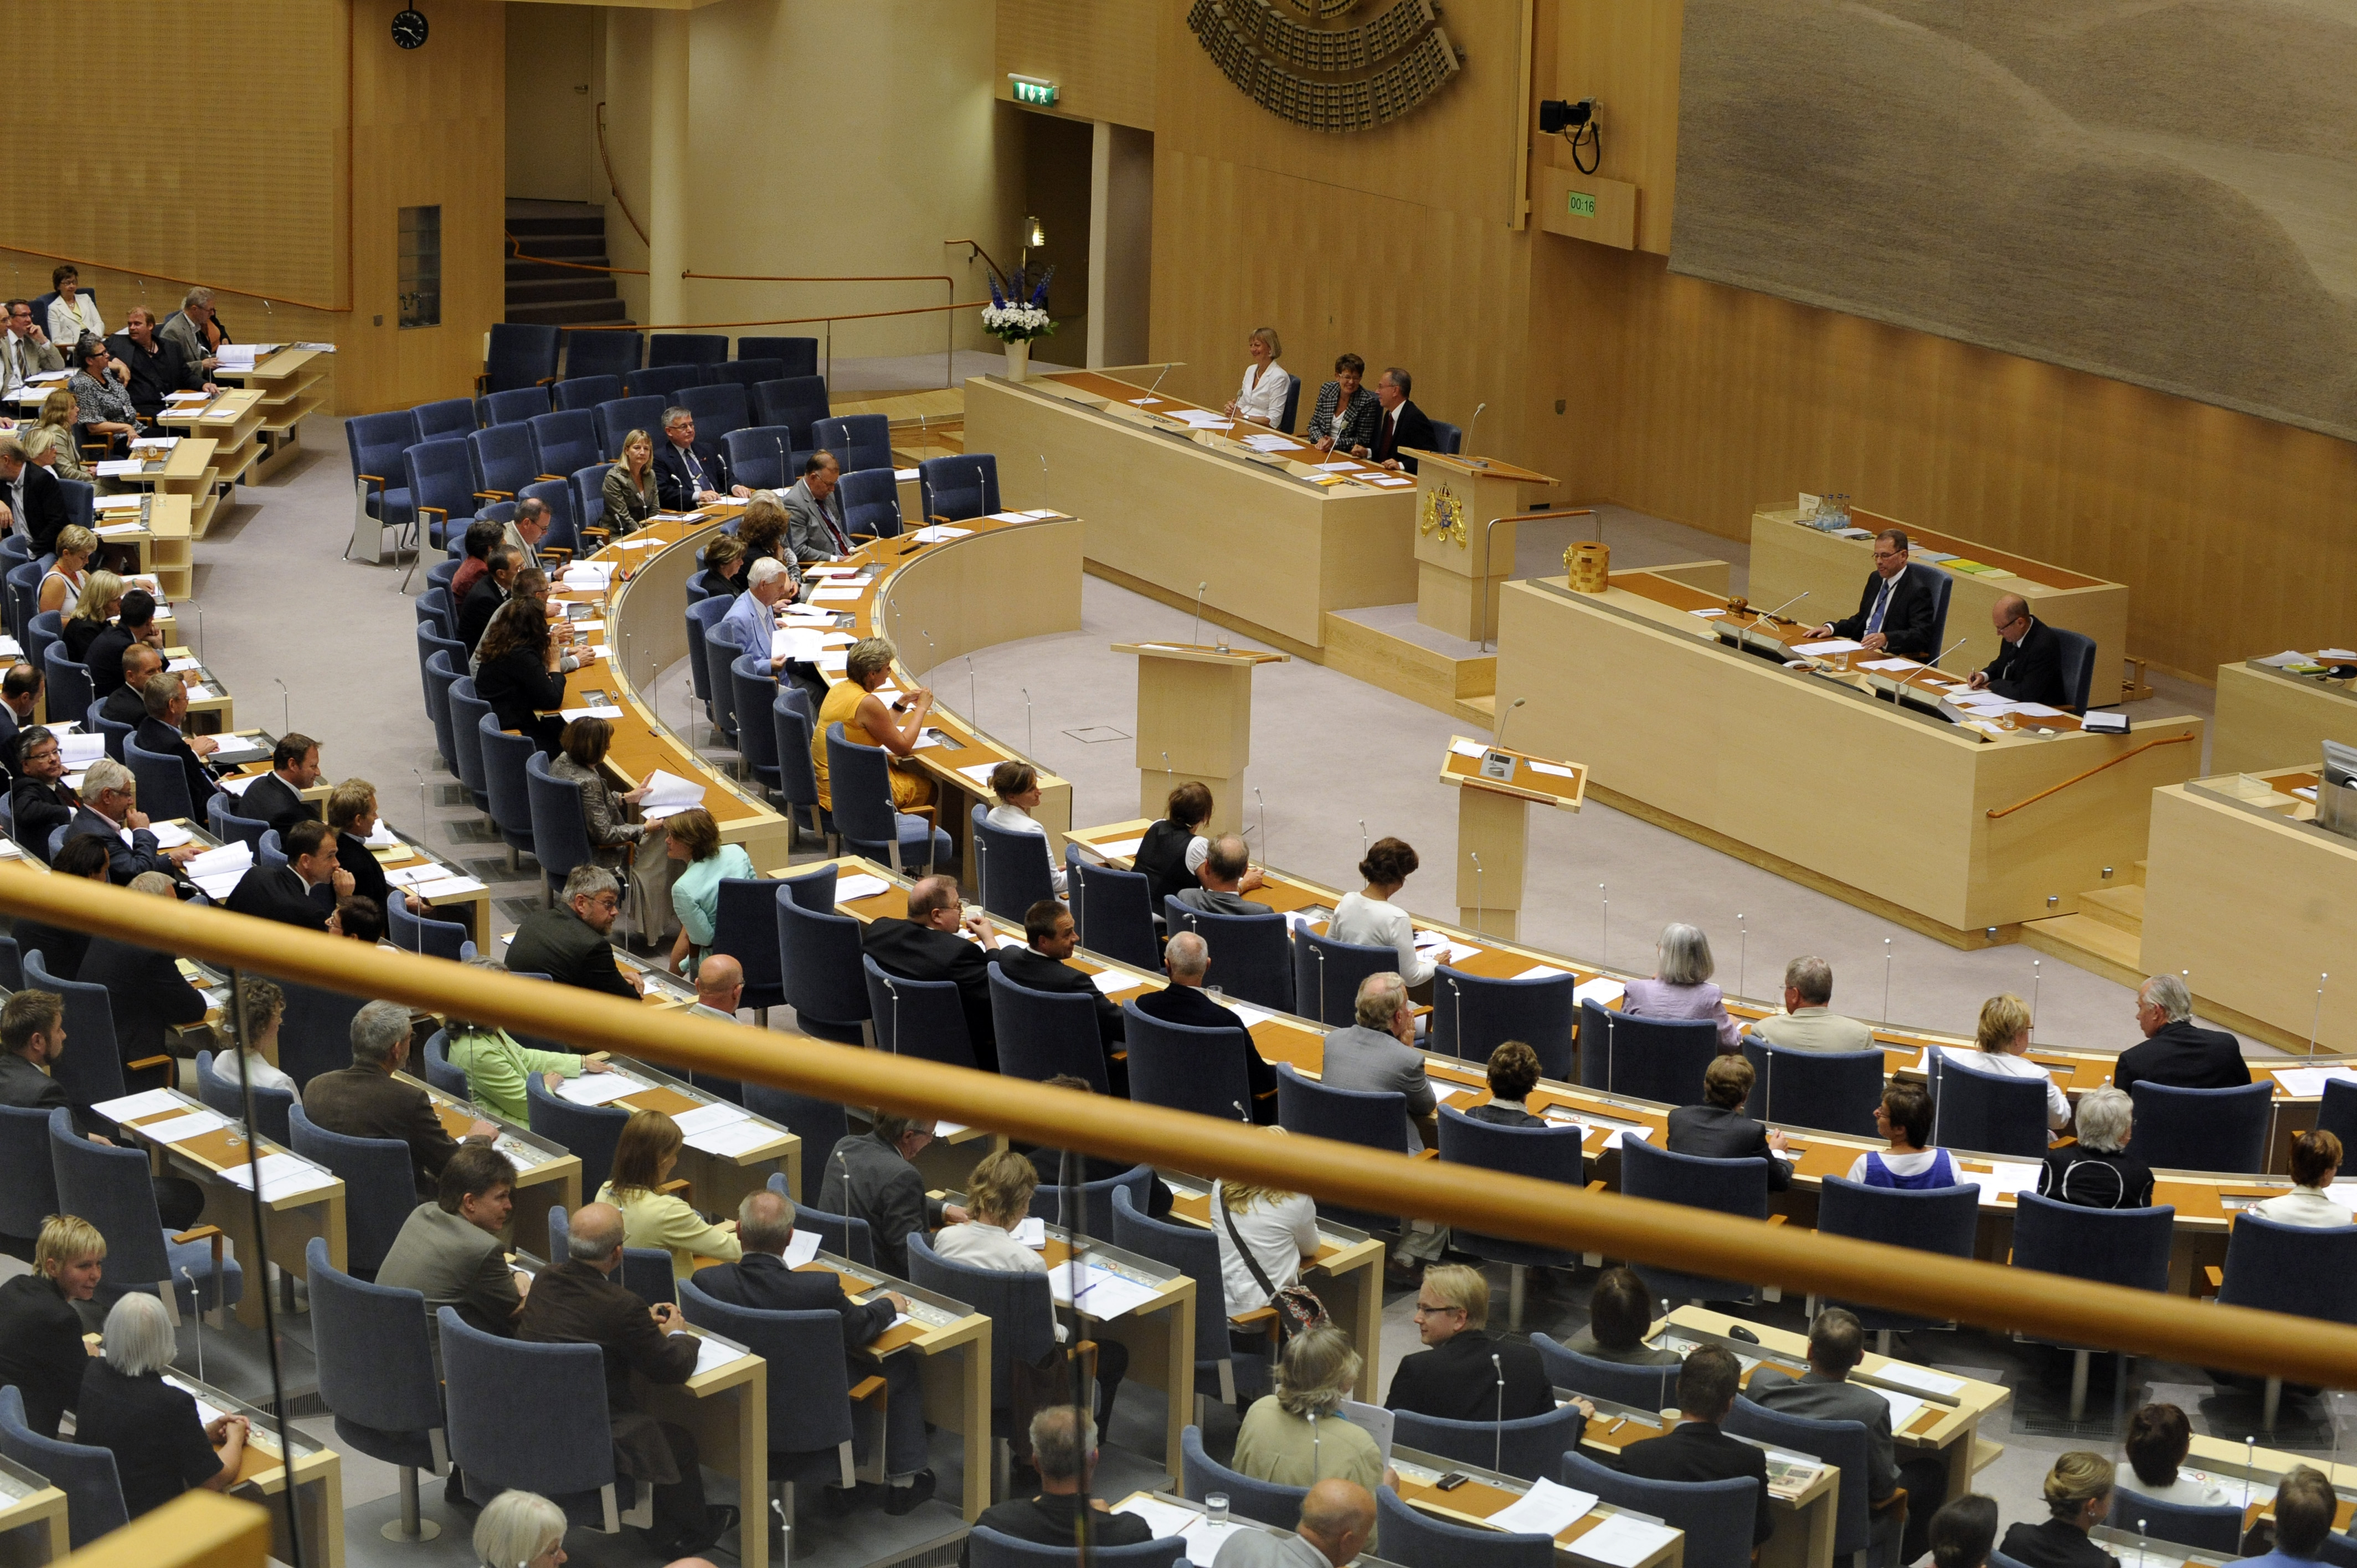 Alliansen, Kristdemokraterna, Riksdagsvalet 2010, Moderaterna, Politisk vilde, Fredrik Reinfeldt, Göran Hägglund, Göran Thingwall